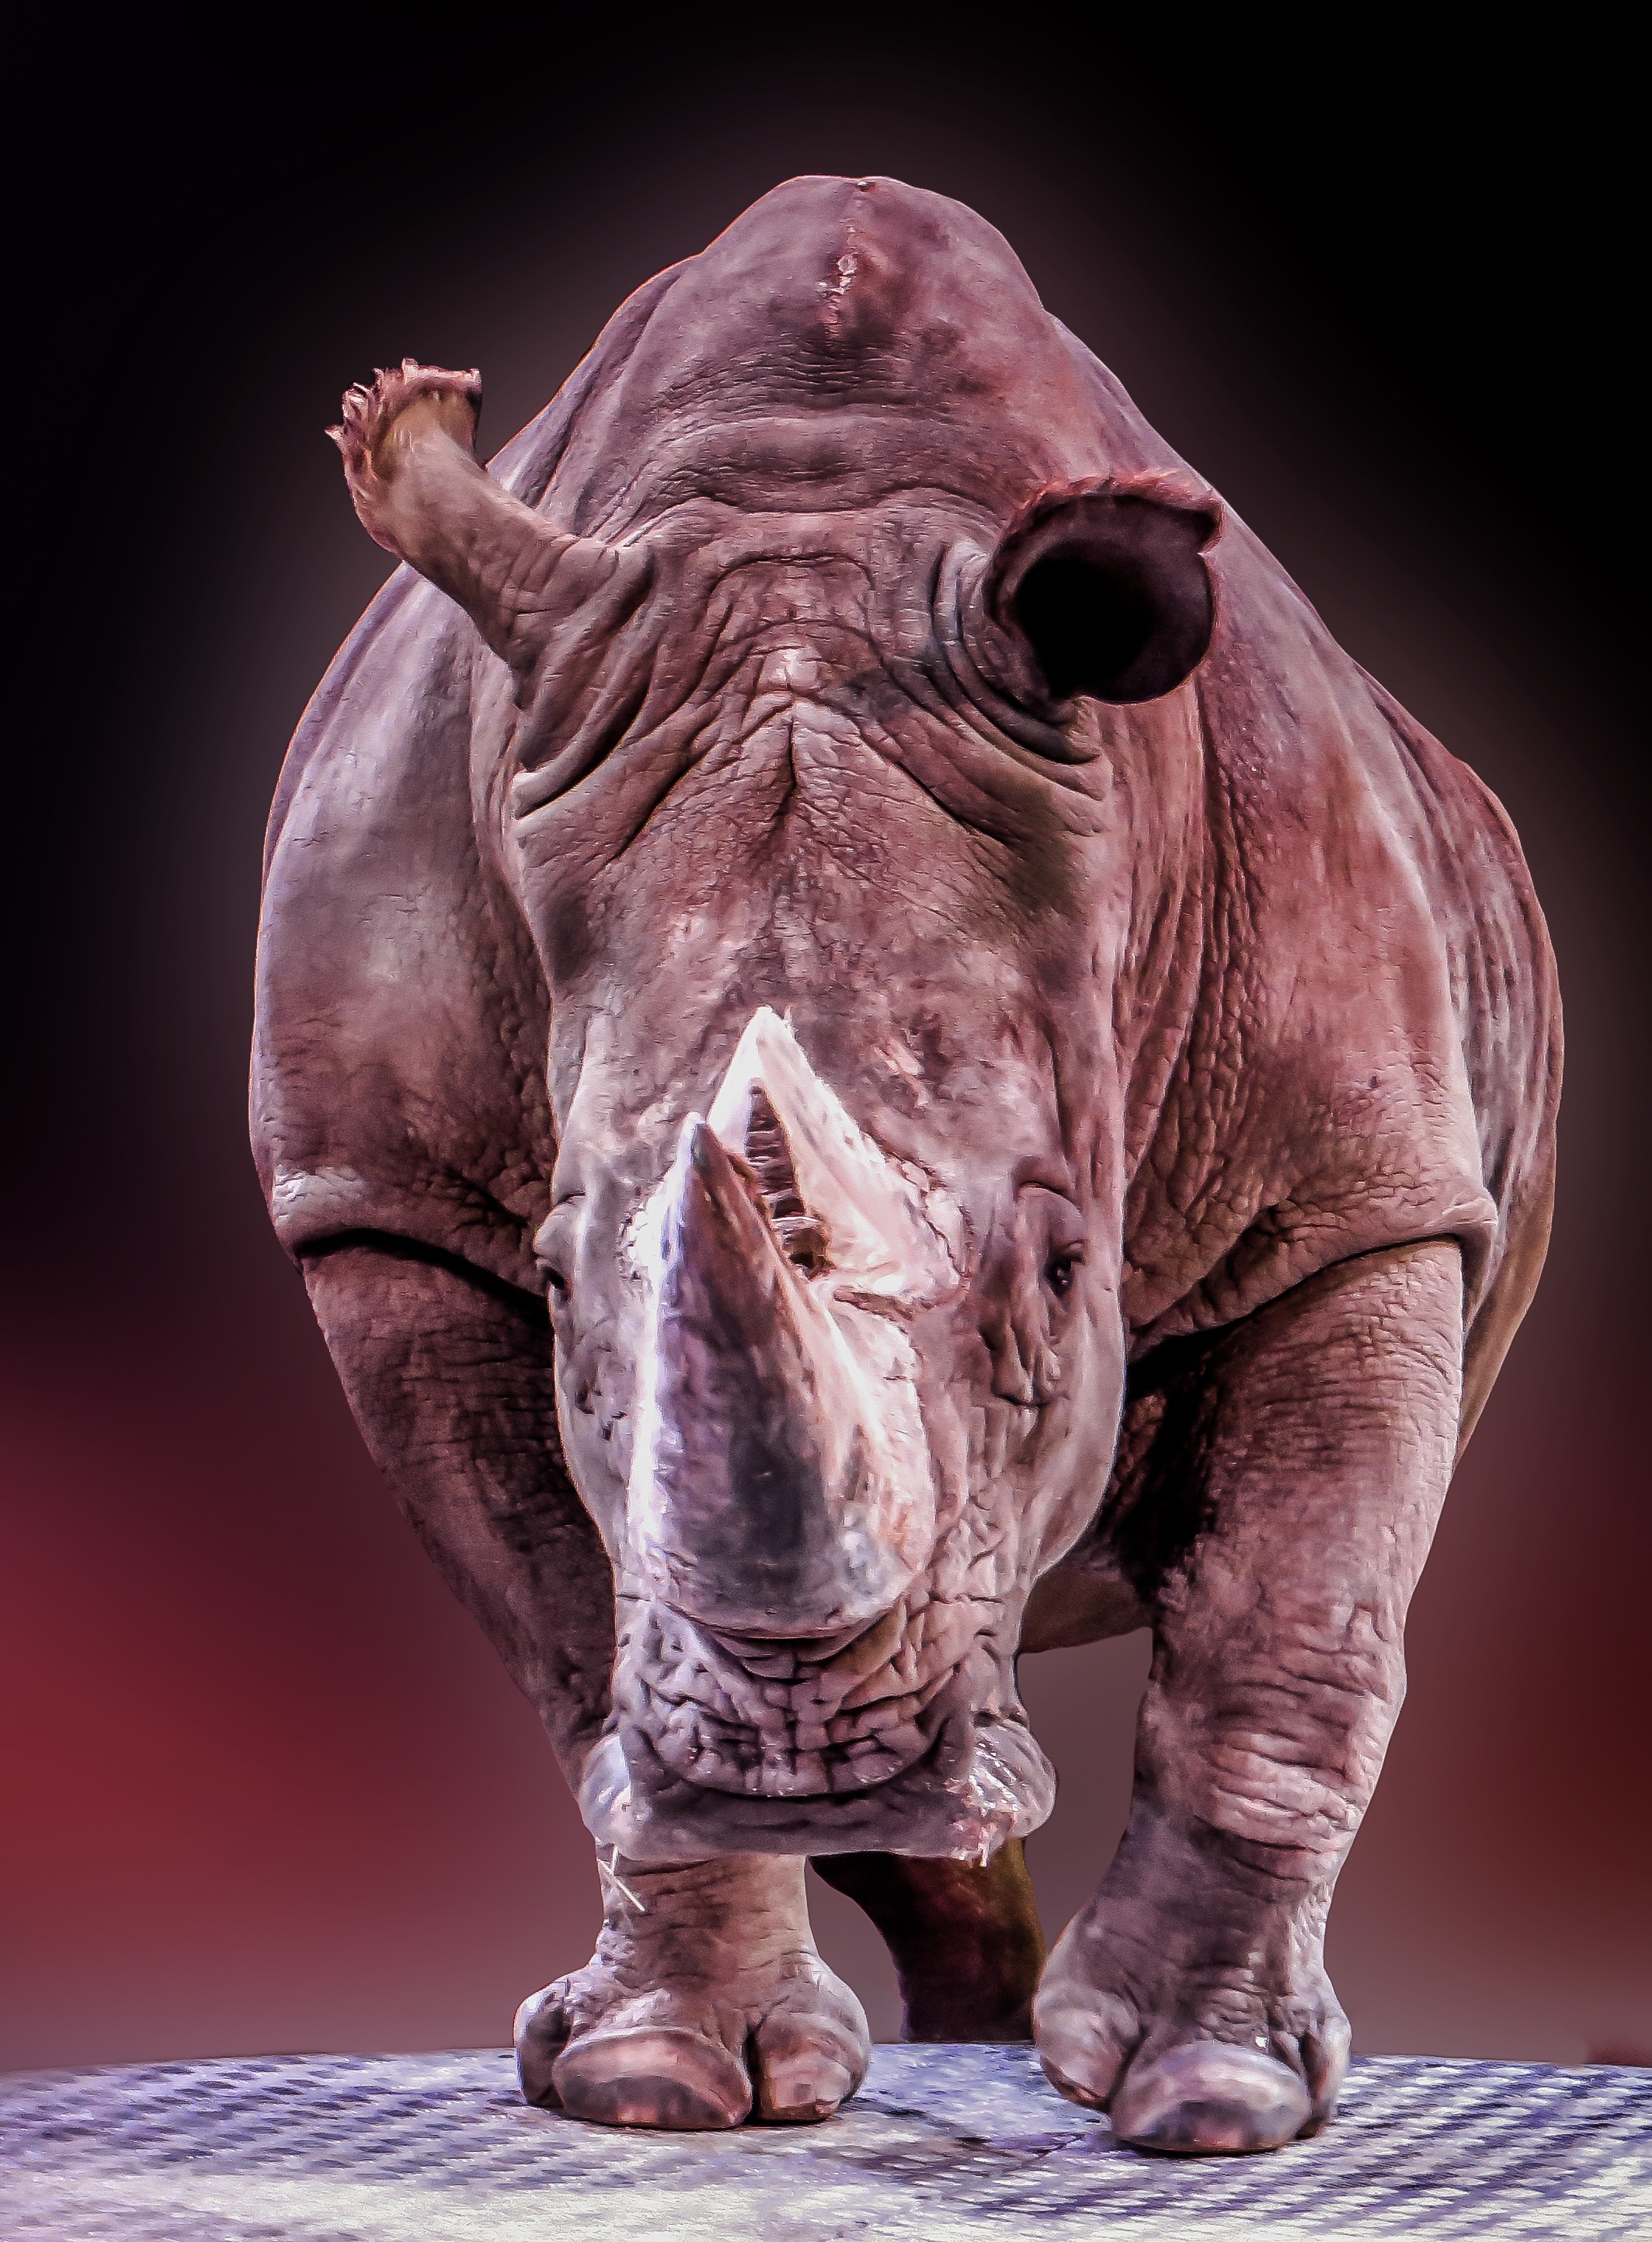 Wild rhino photo